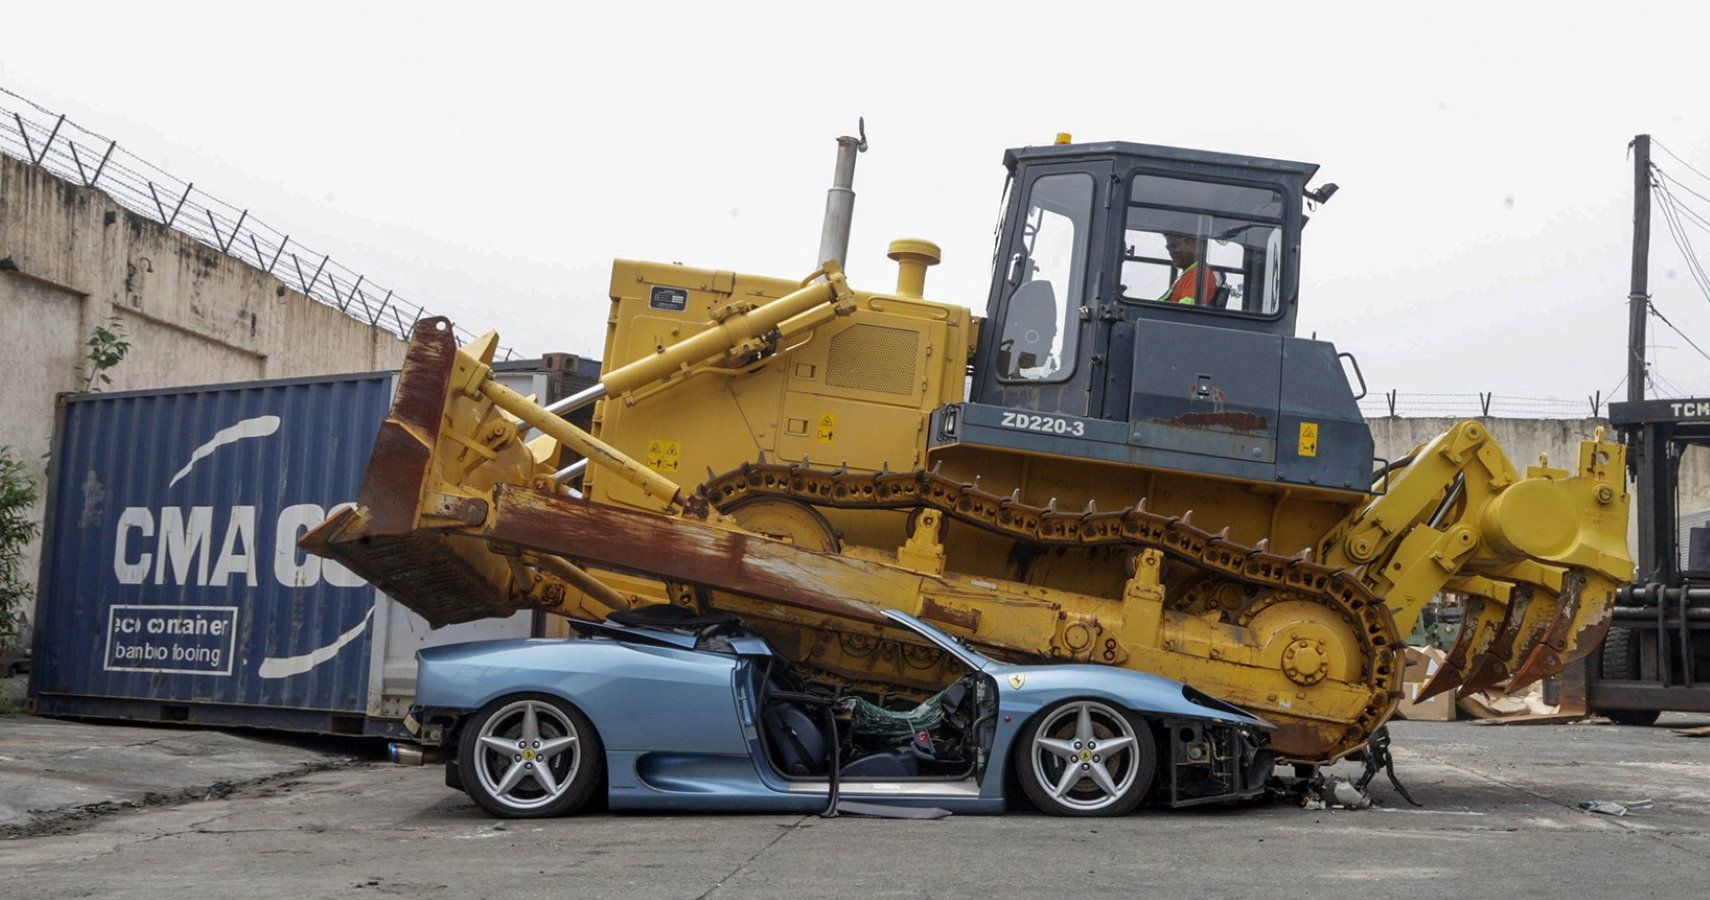 Ferrari Crushed